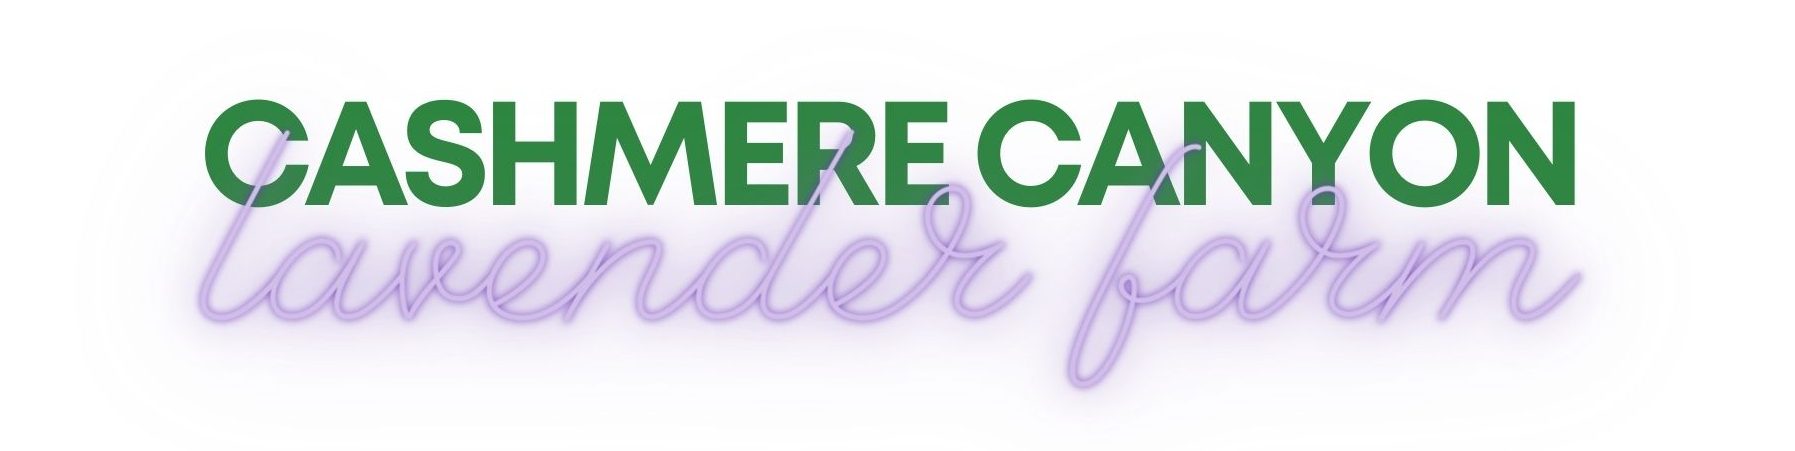 Cashmere Canyon Lavender Farm Logo